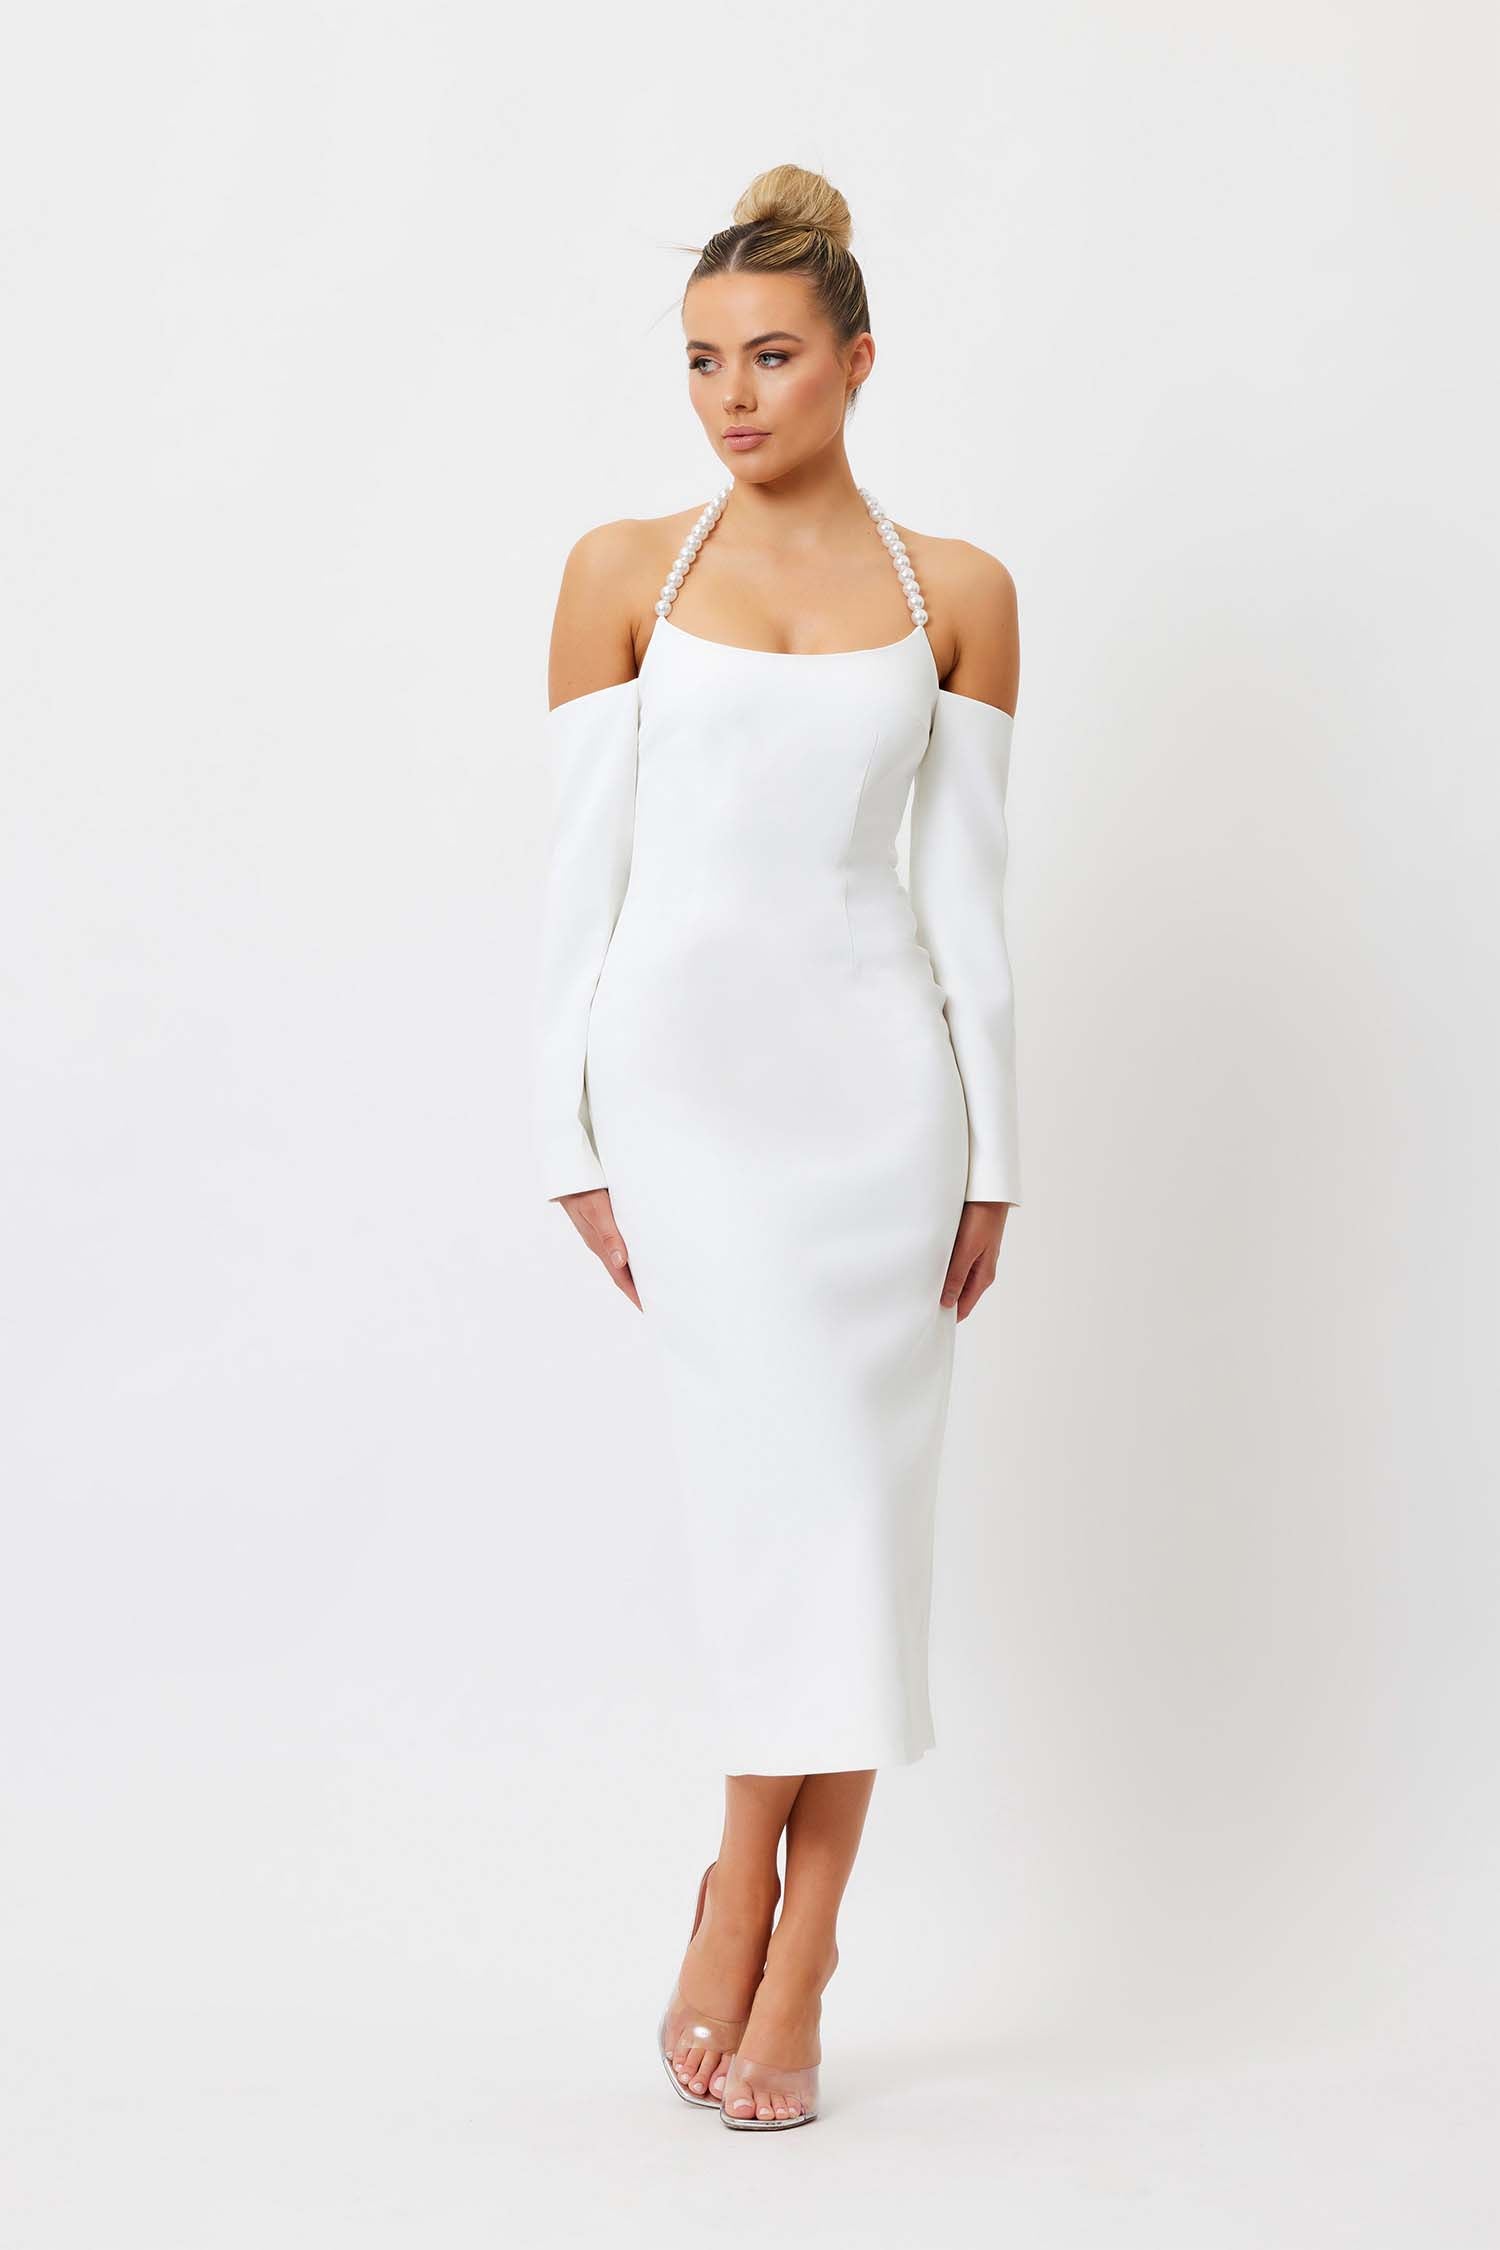 Tess Pearl Neck Dress - White